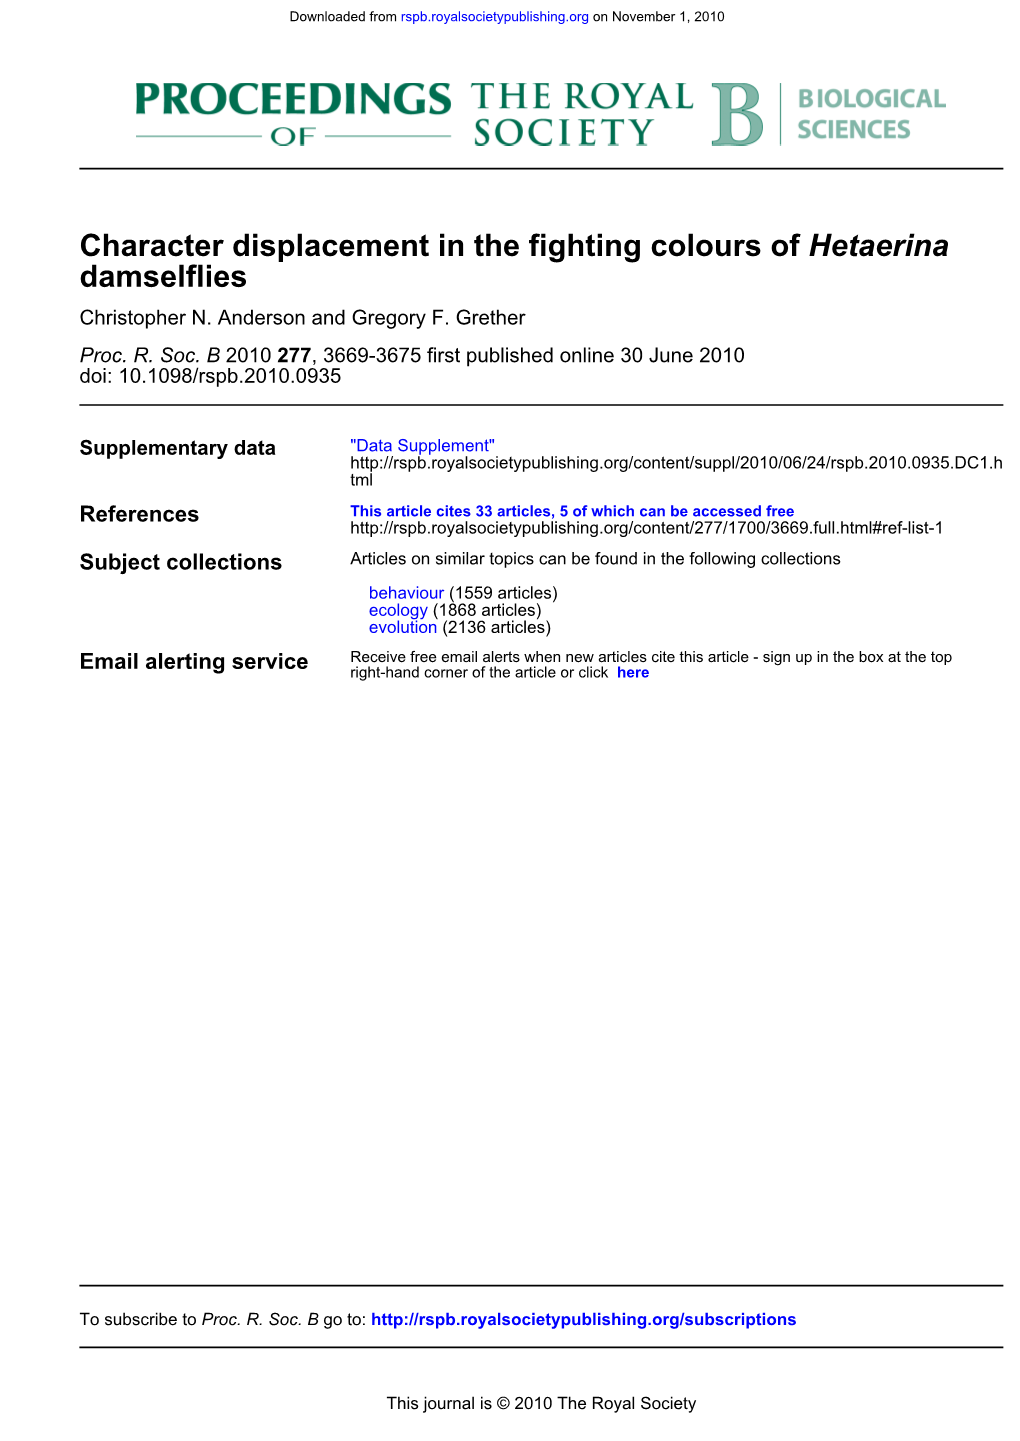 Damselflies Hetaerina Character Displacement in the Fighting Colours Of